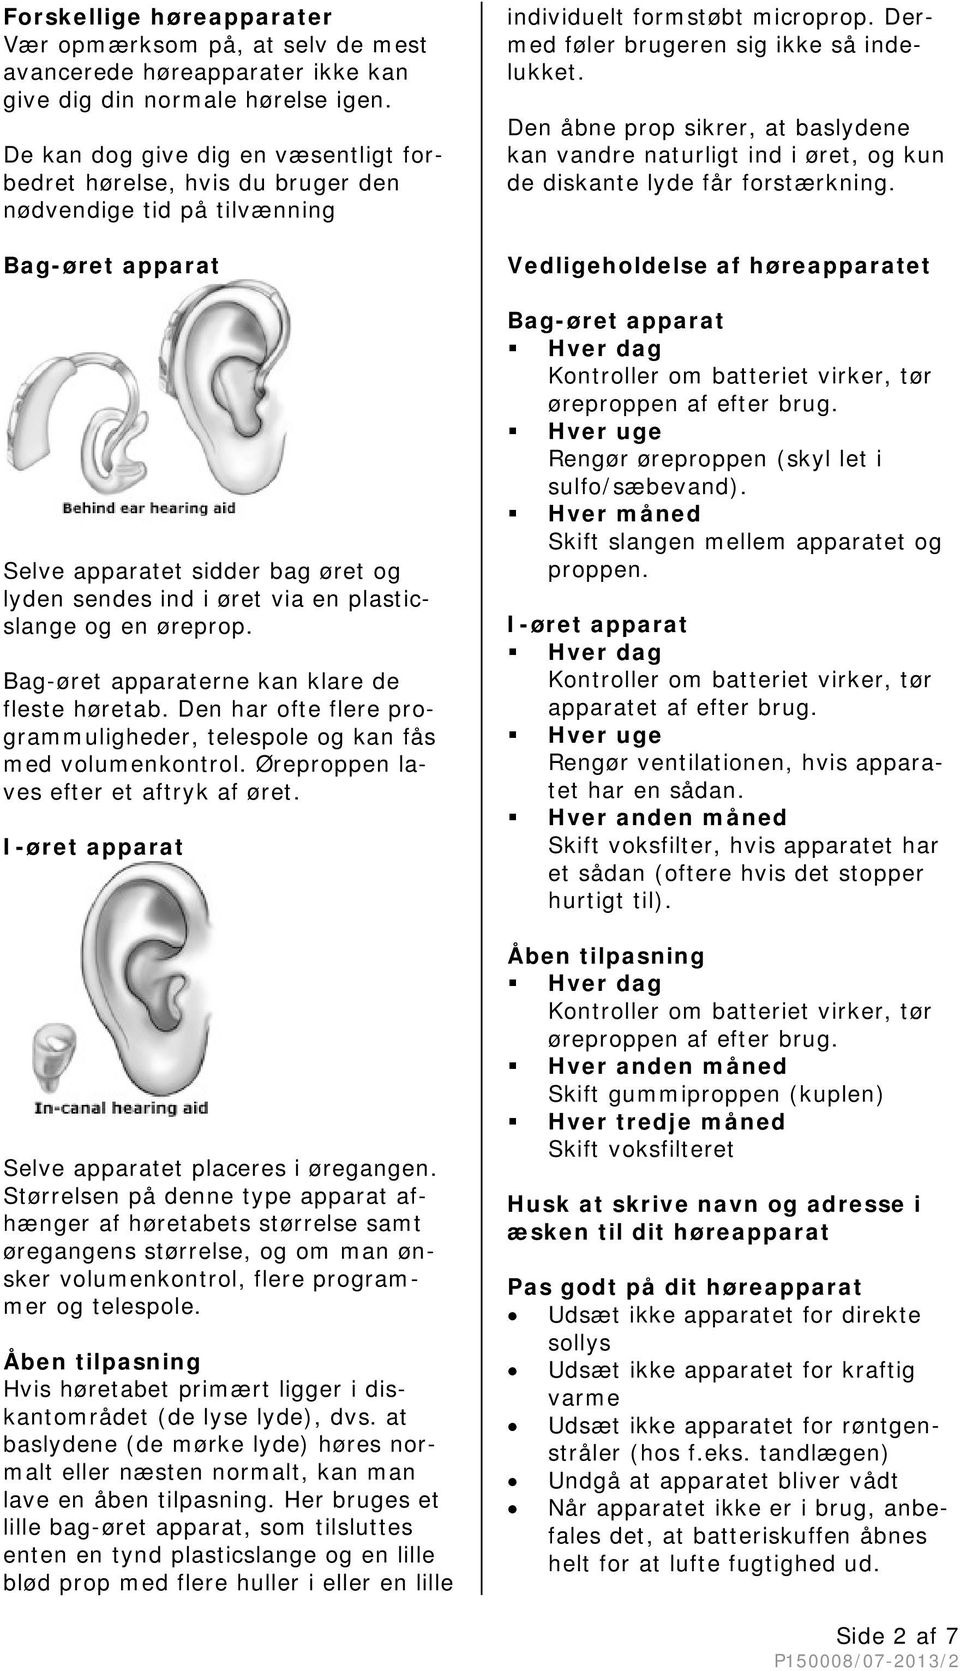 Høreapparat til voksne - PDF Gratis download